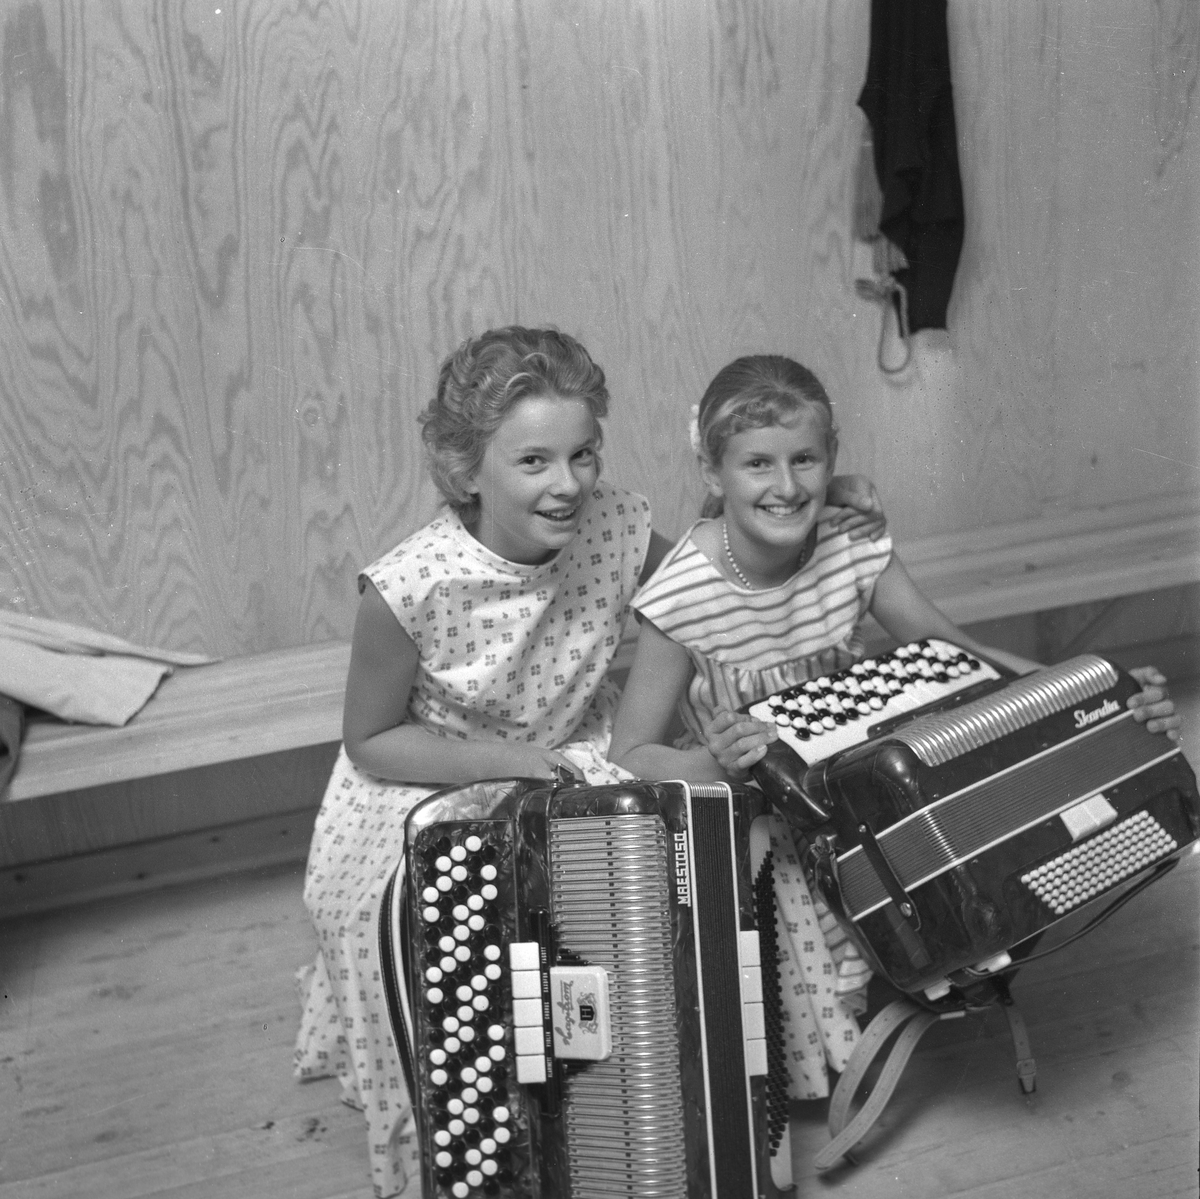 Diverse bilder, 1958.
Trivselkvällar, badflickor, m.m.